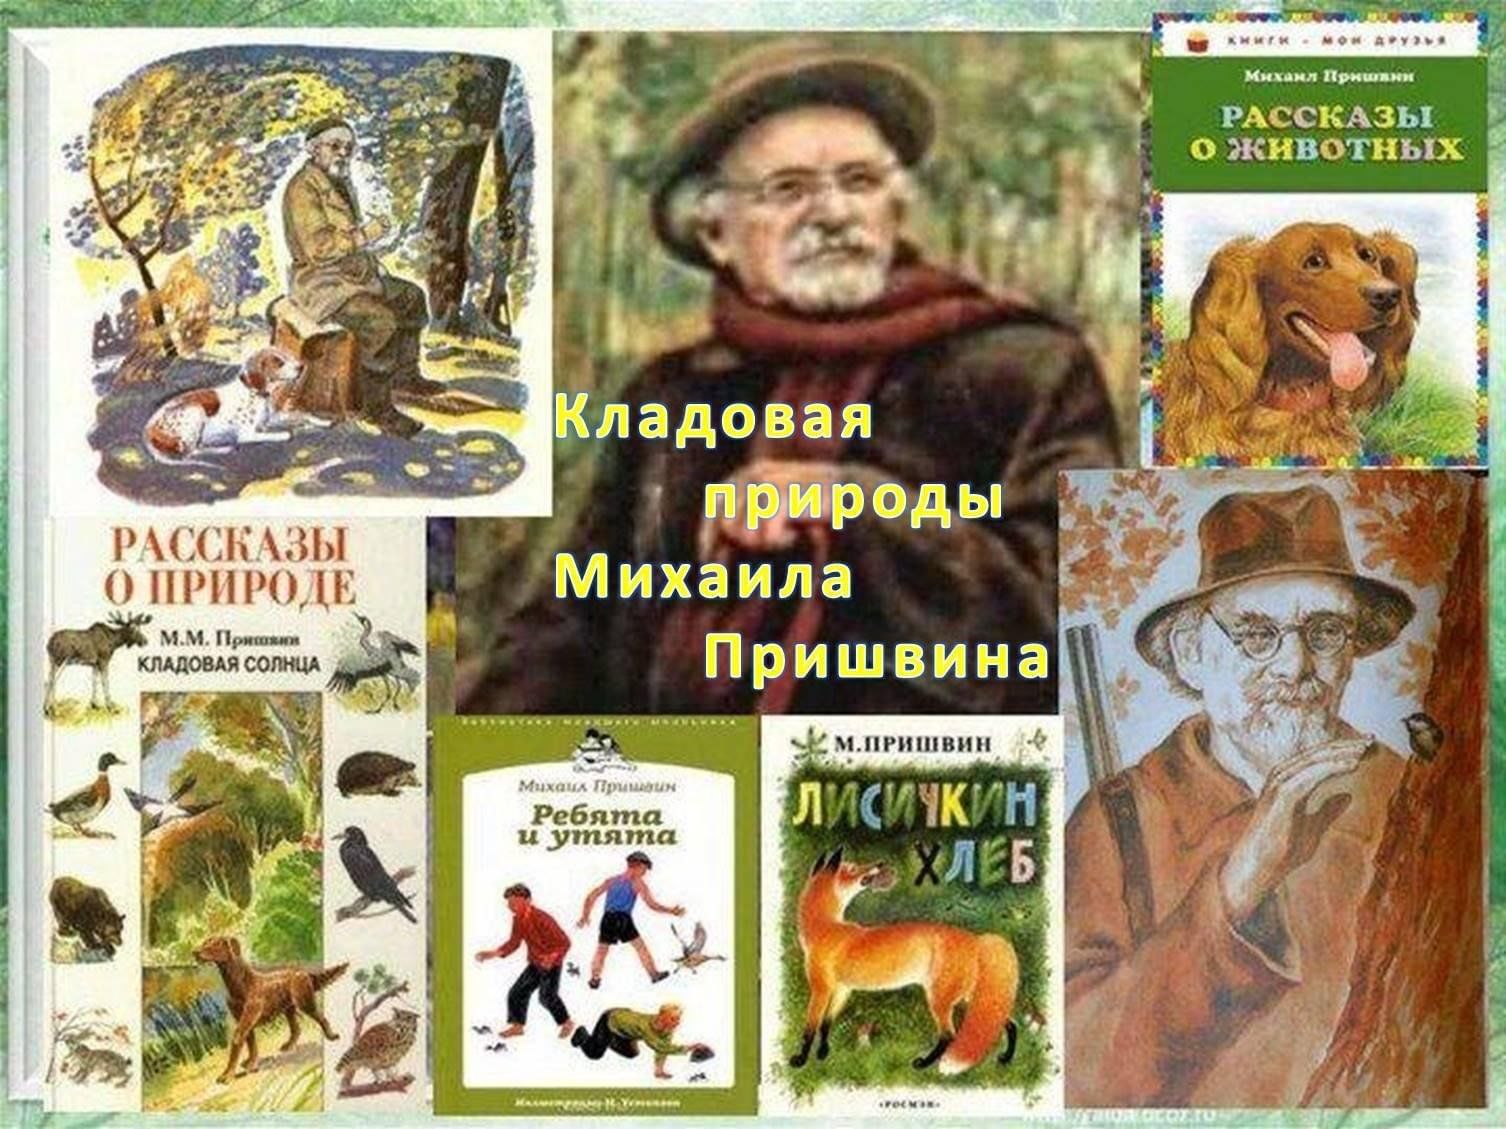 Произведения о природе русских писателей